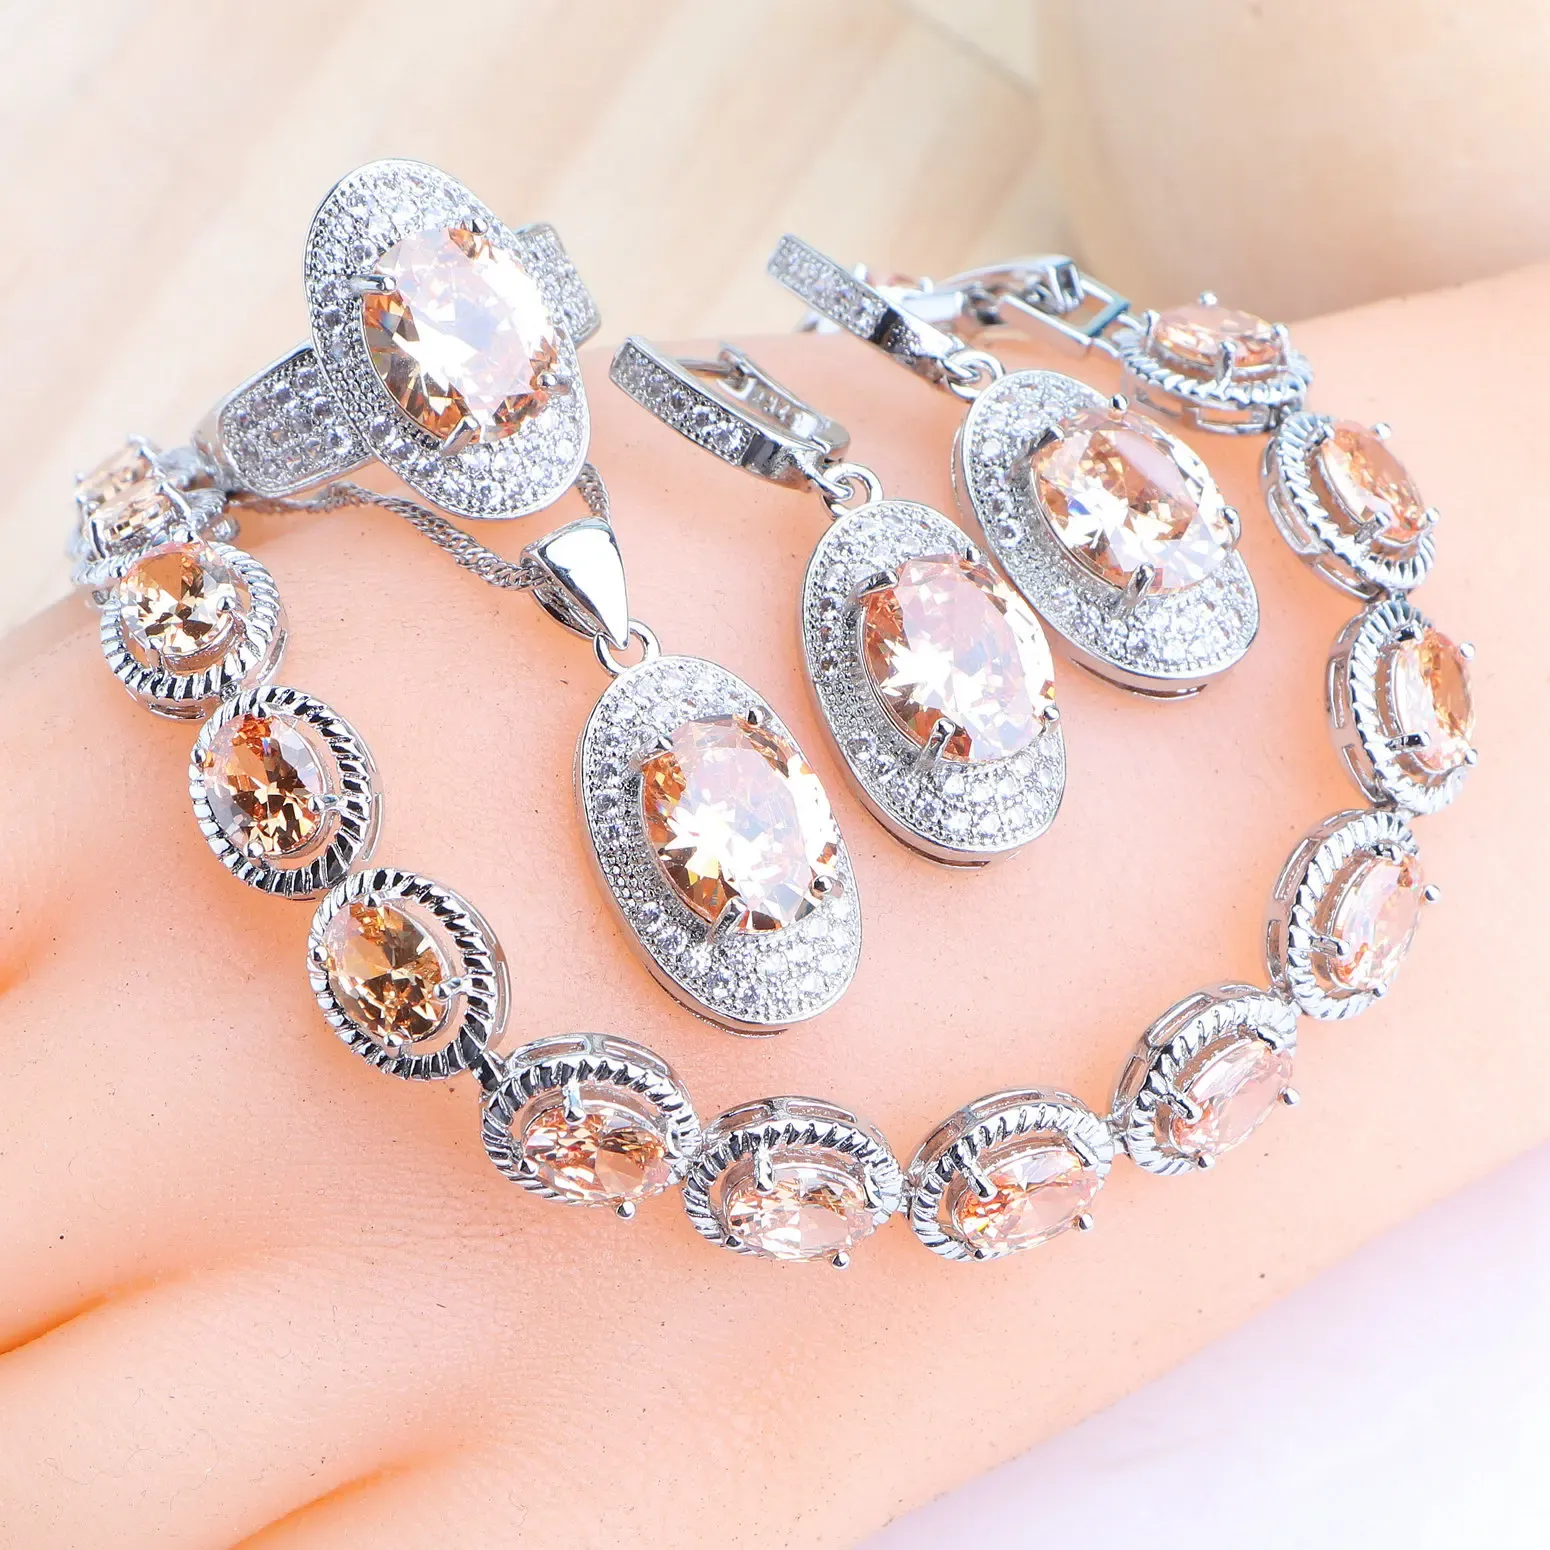 Halskette 925 Silberschmuck Sets Champagner -Zirkonsteine Ohrringe Eheringe Anhänger Halskette Braut Set Armbänder für Frauen